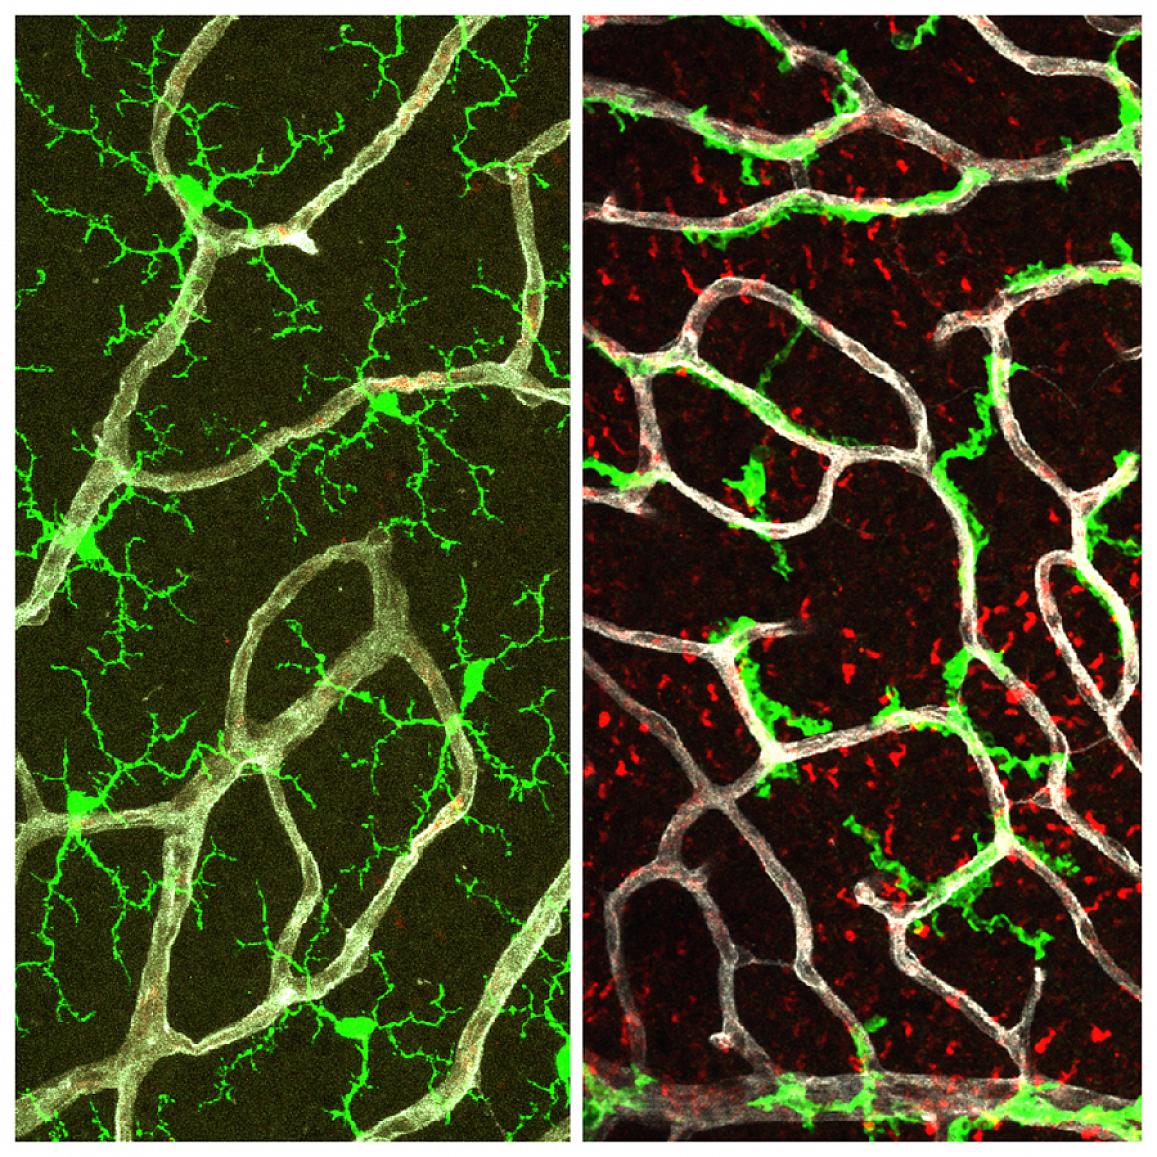 comparison of microglia in healthy retina vs retina without TGF-beta